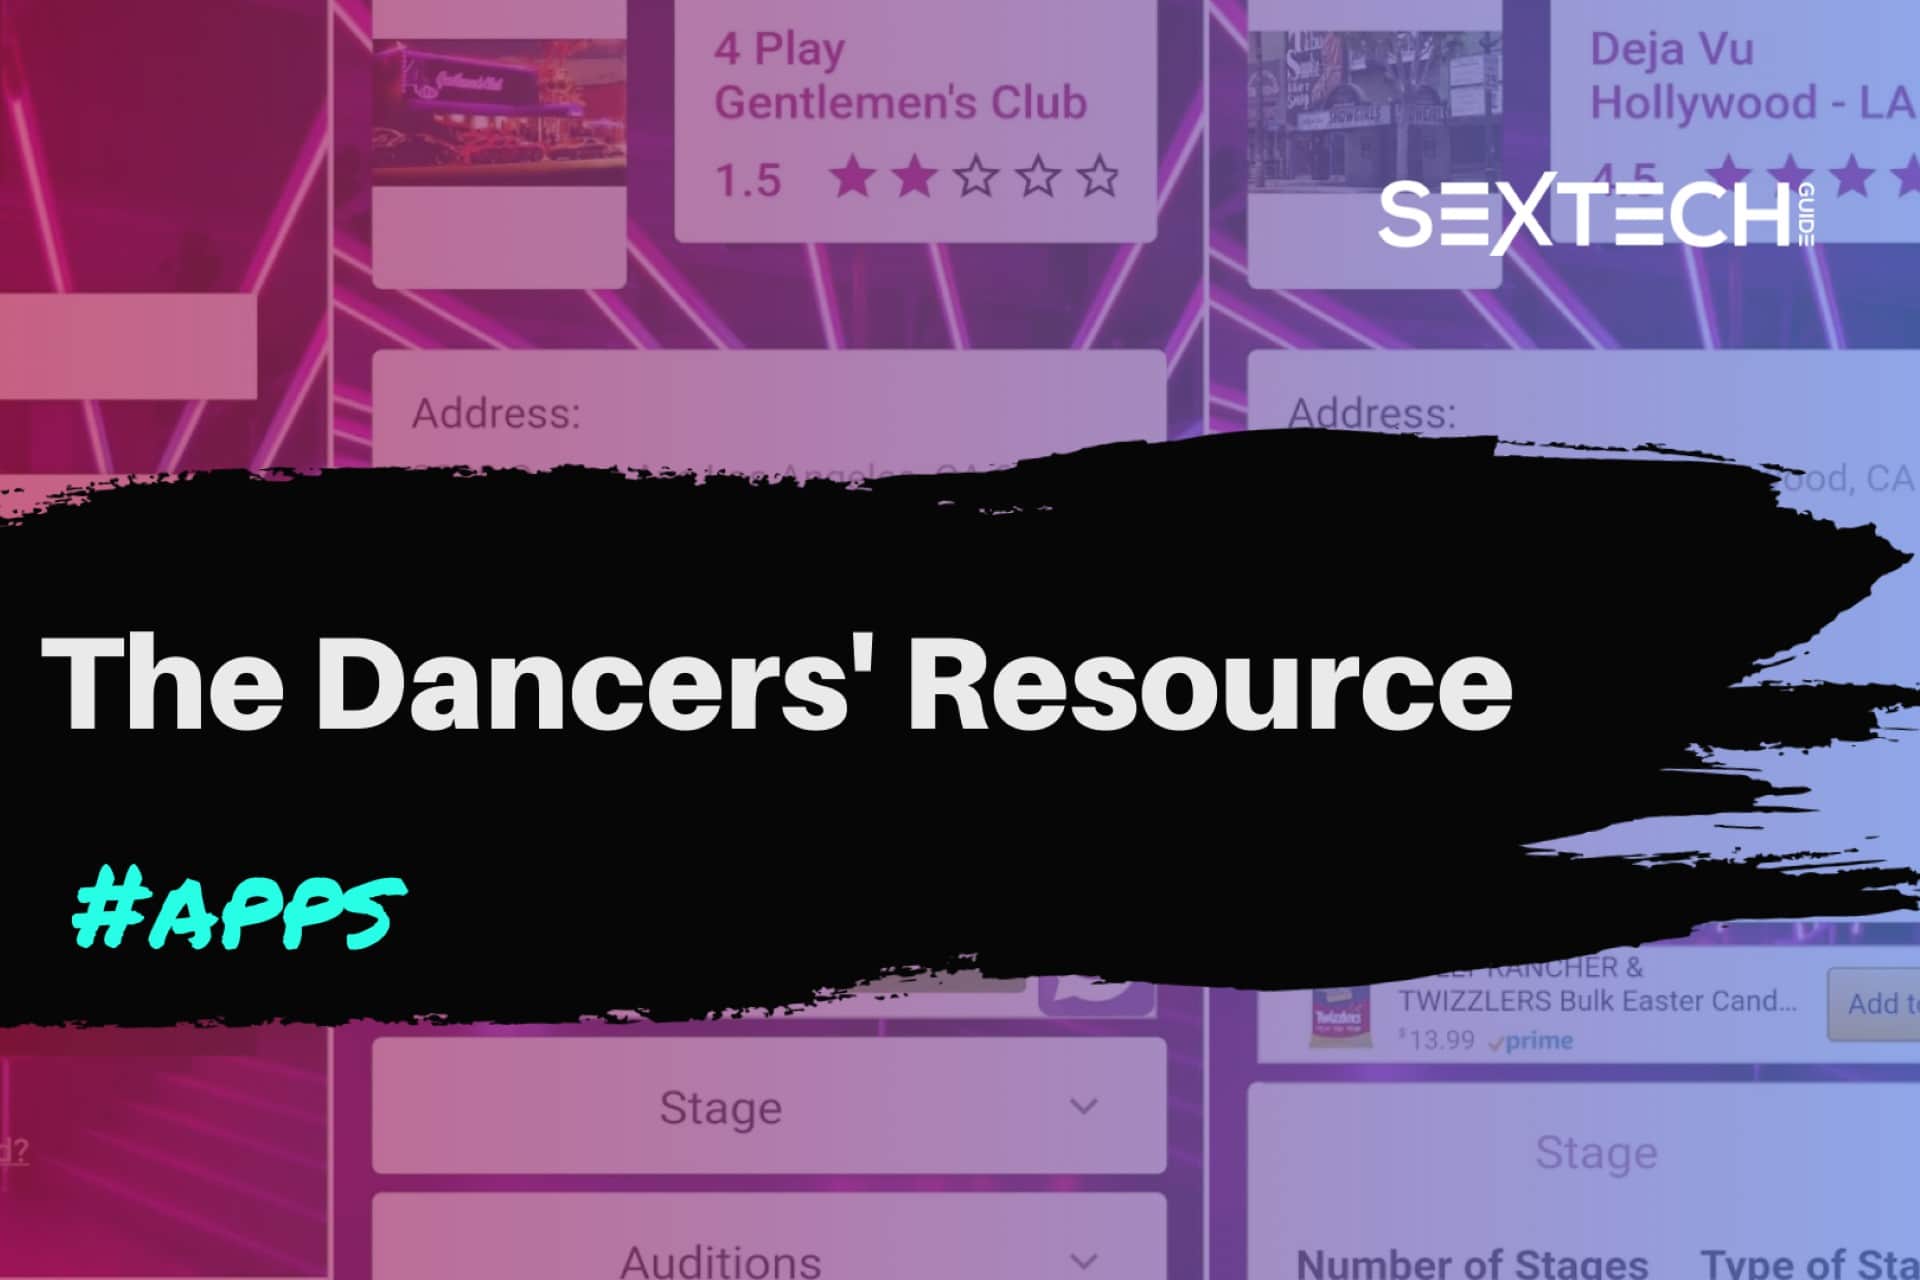 The Dancers Resource app